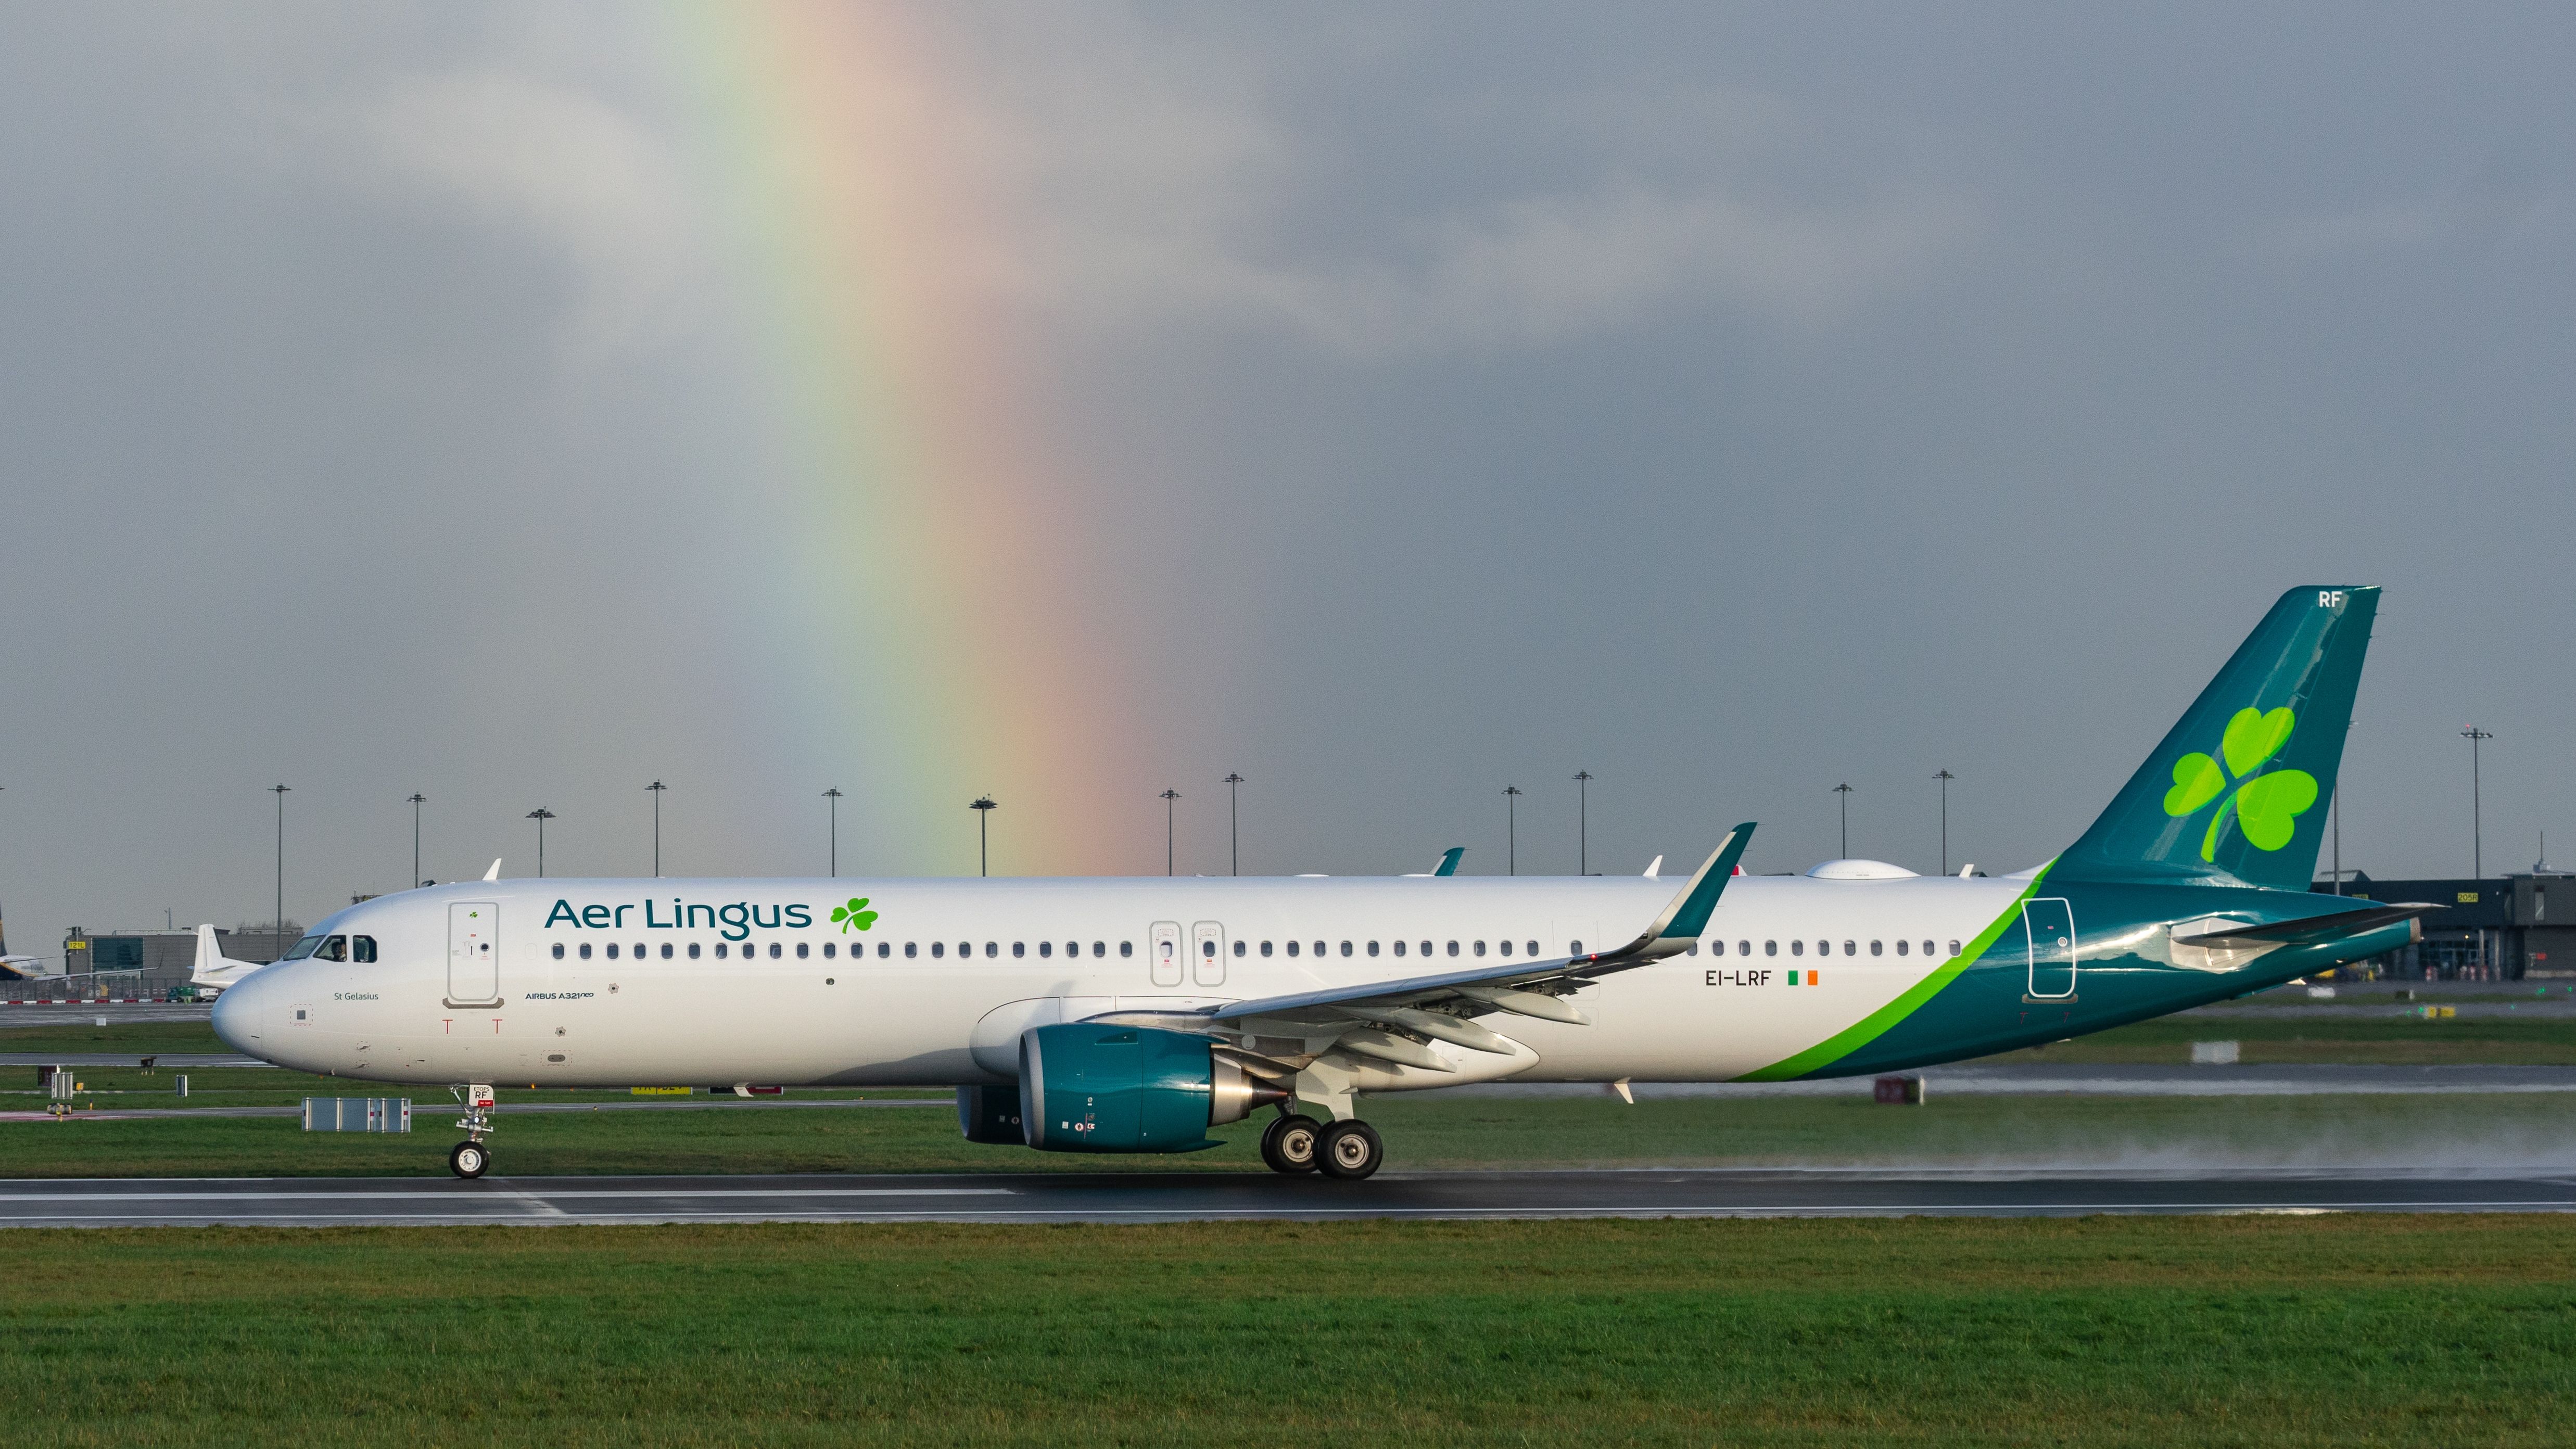 Aer Lingus Airbus A321neo departing Dublin Airport DUB